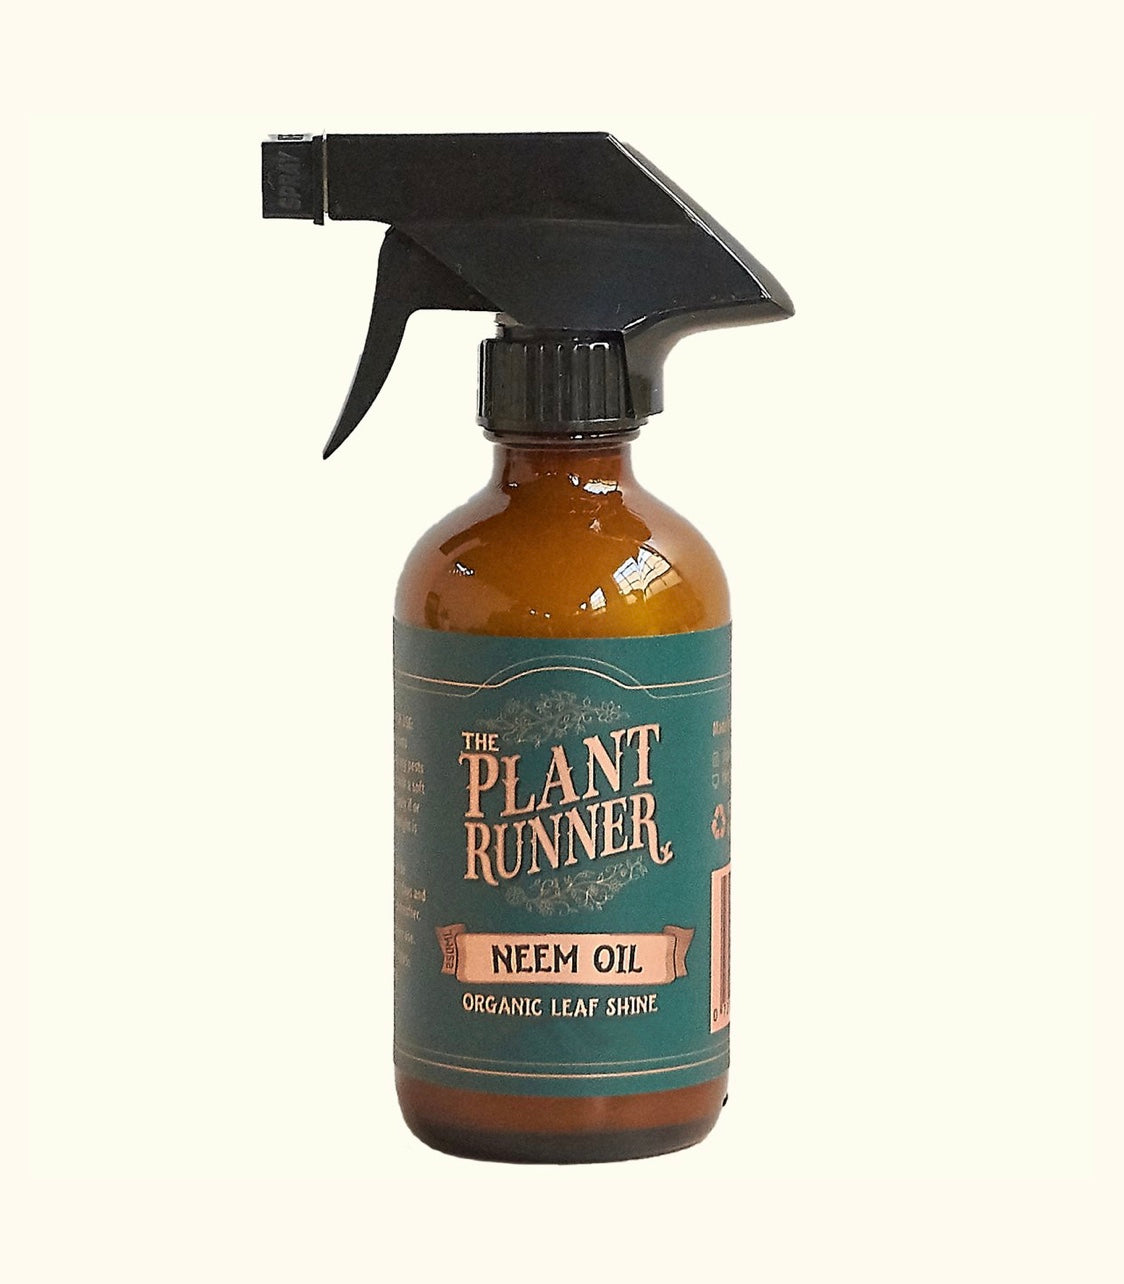 Plant runner neem oil